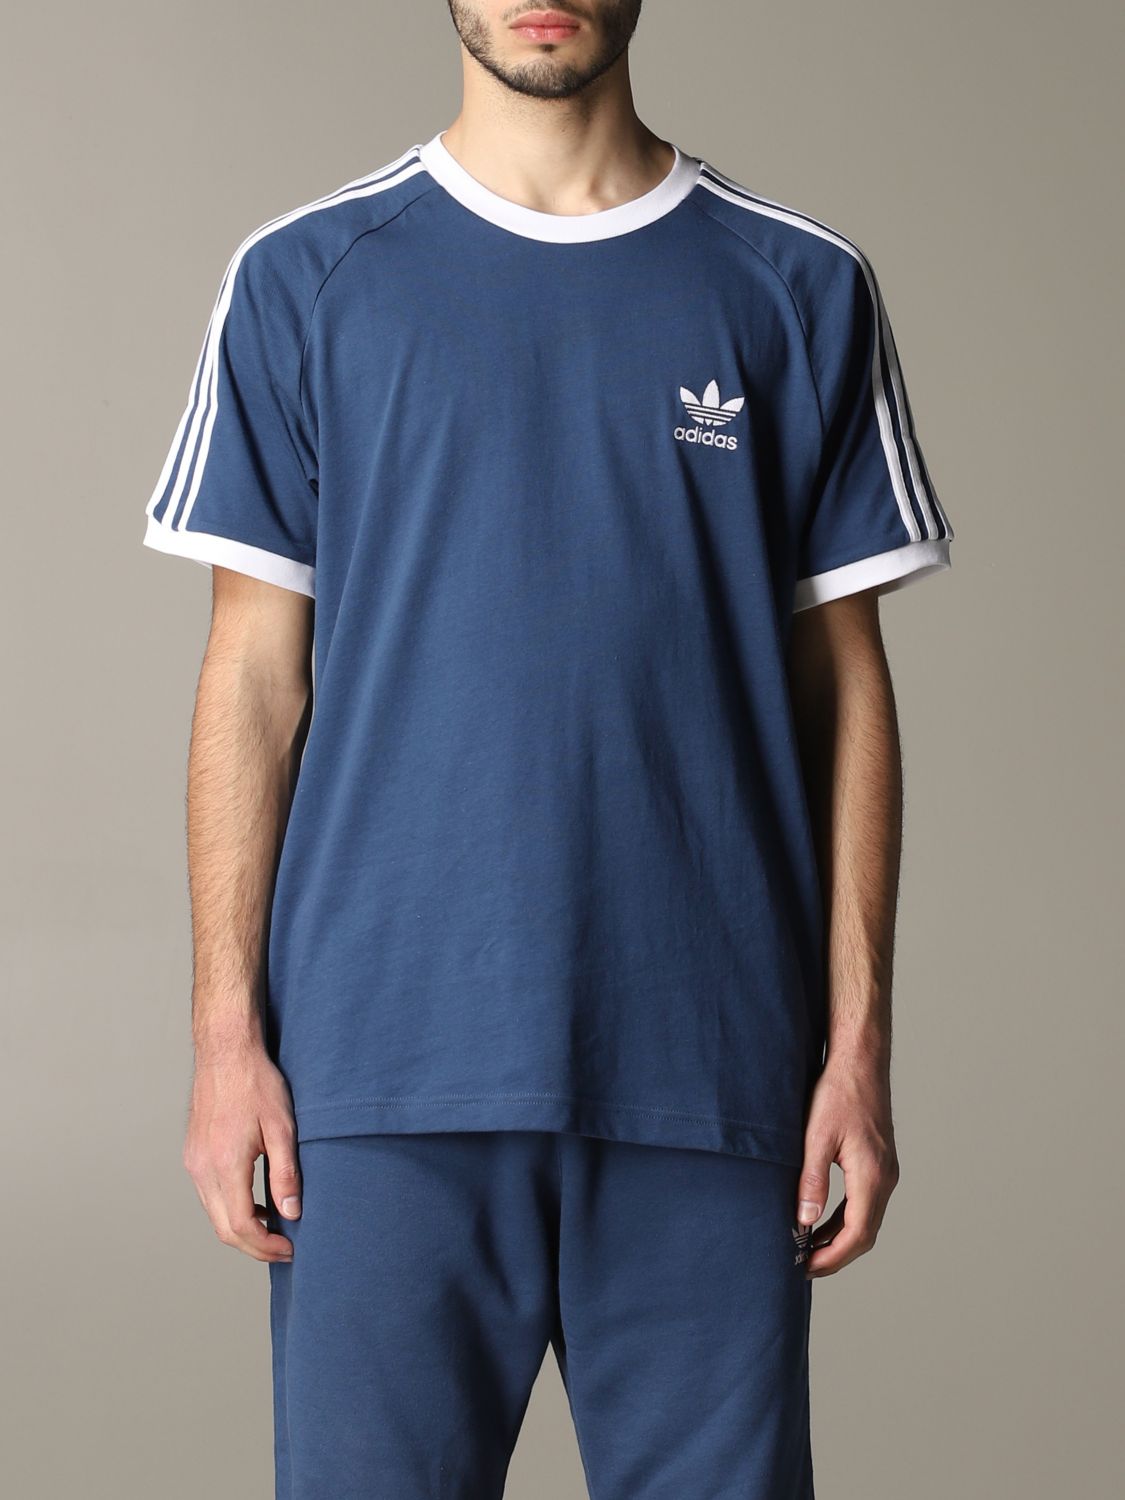 ملابس رسومات Adidas Originals short-sleeved T-shirt with logo ملابس رسومات